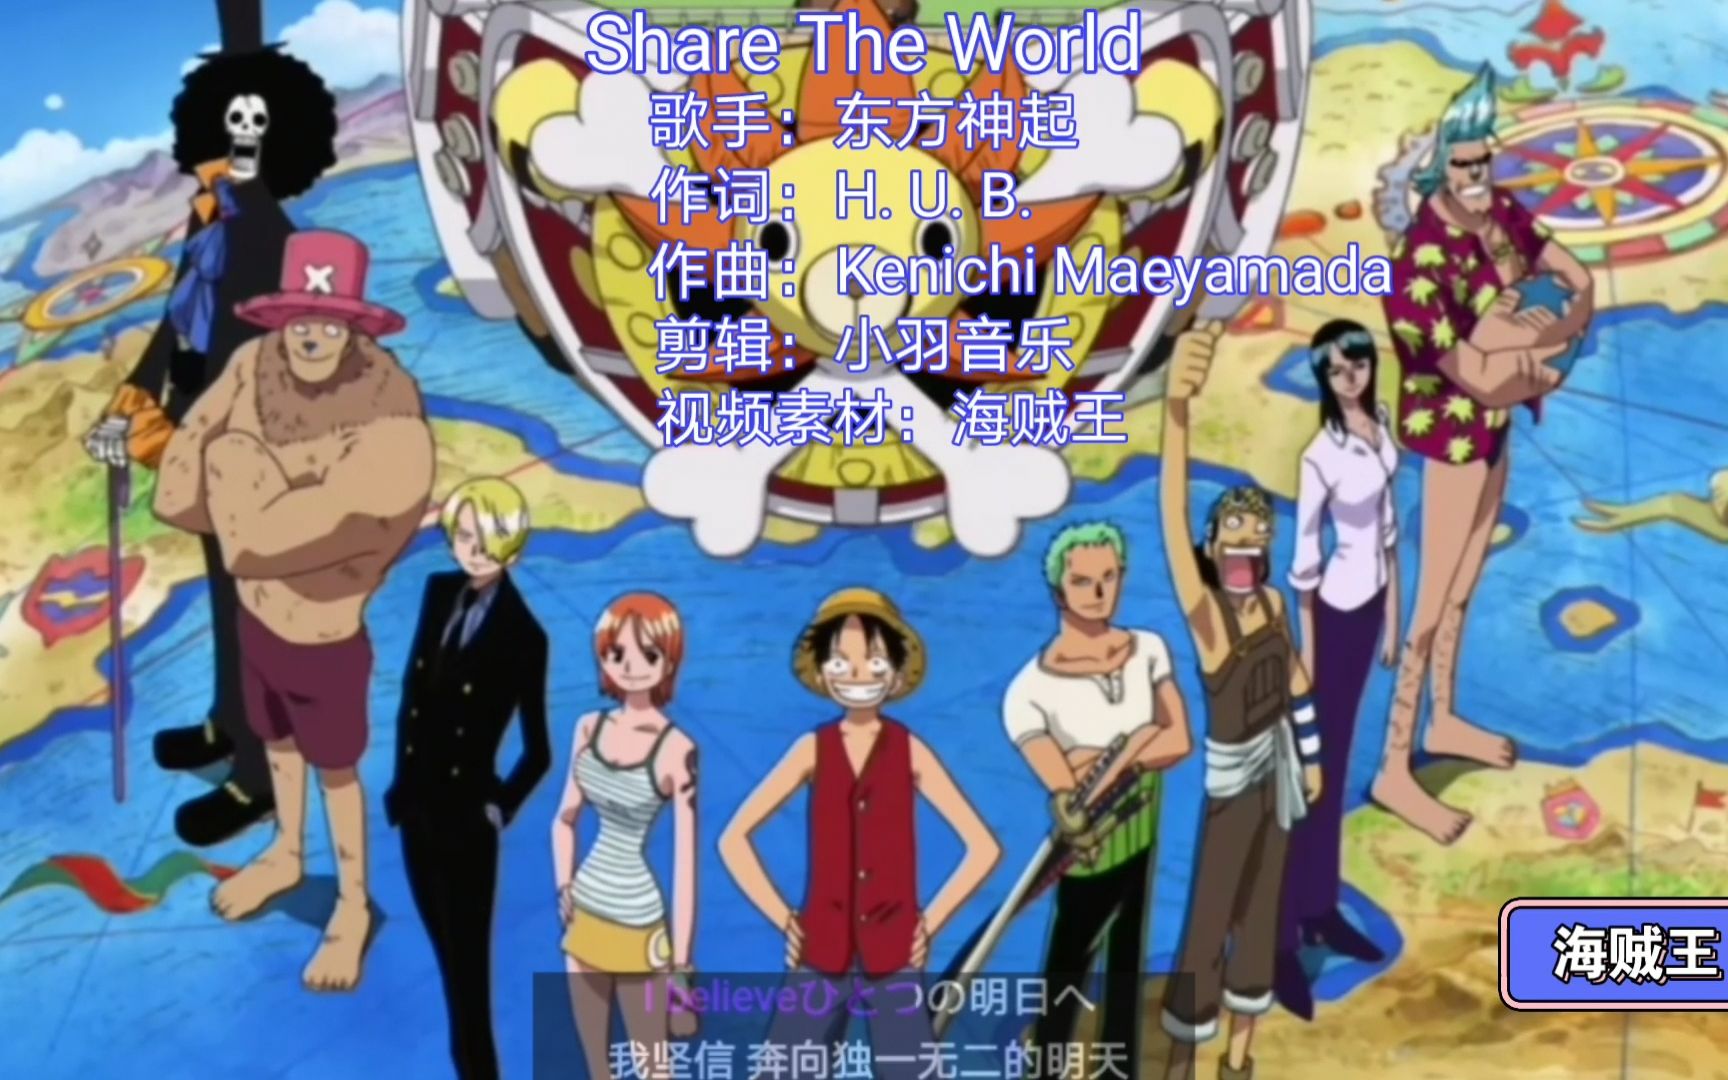 海贼王一首东方神起的《Share The World》完整版，开启了航海之路。